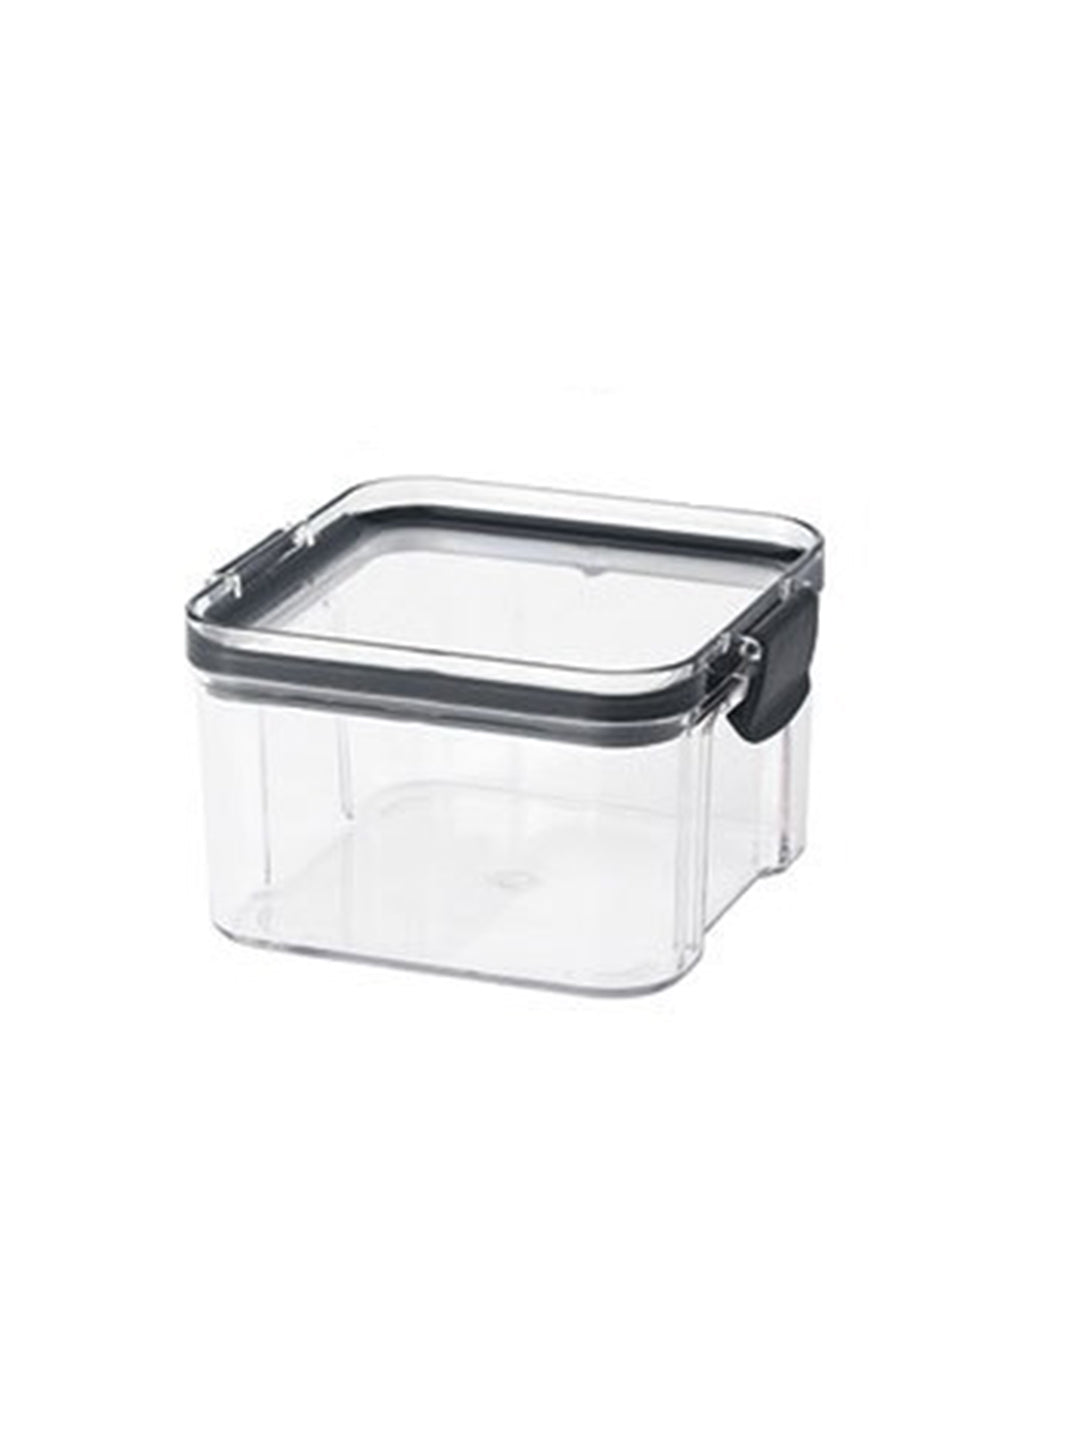 VON CASA Airtight Kitchen Storage Box - Transparent, 10 X 10 X 6.5cm